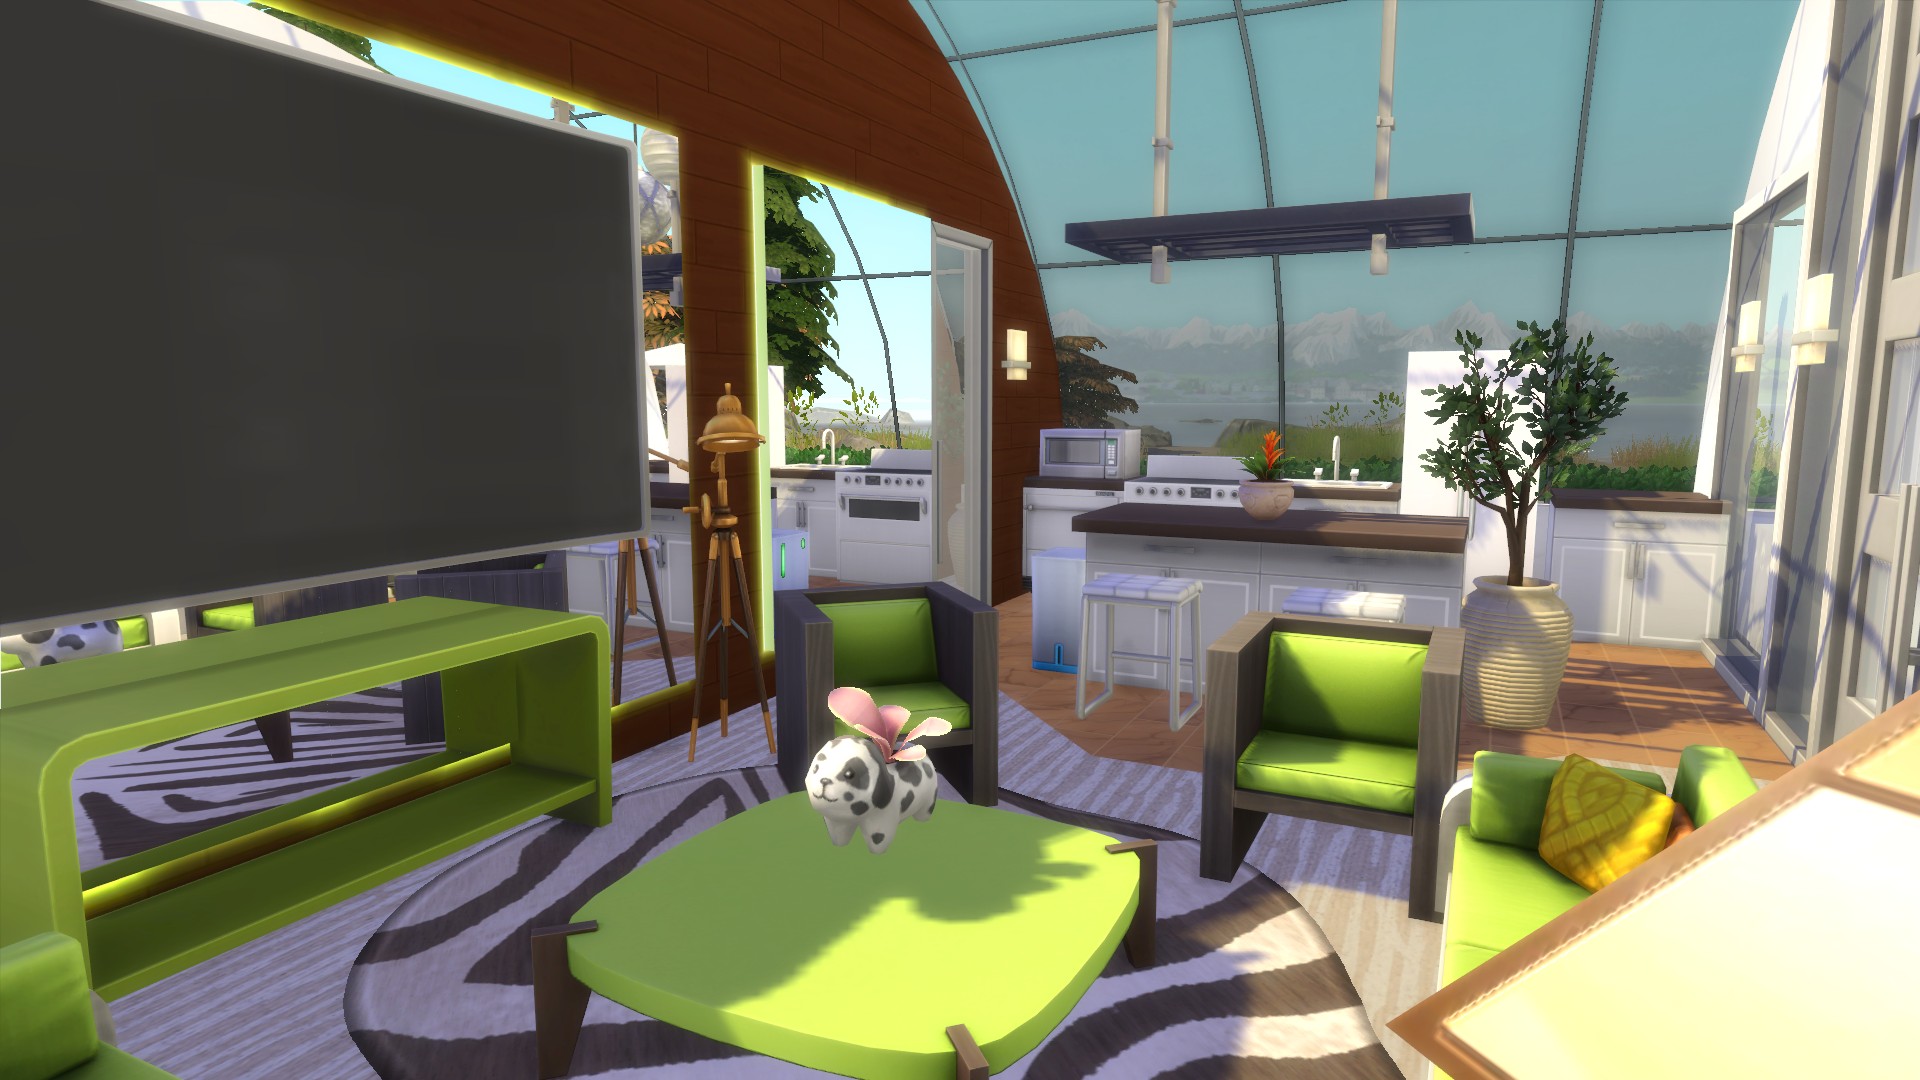 13 dicas de construção para a casa perfeita em The Sims 4! - Liga